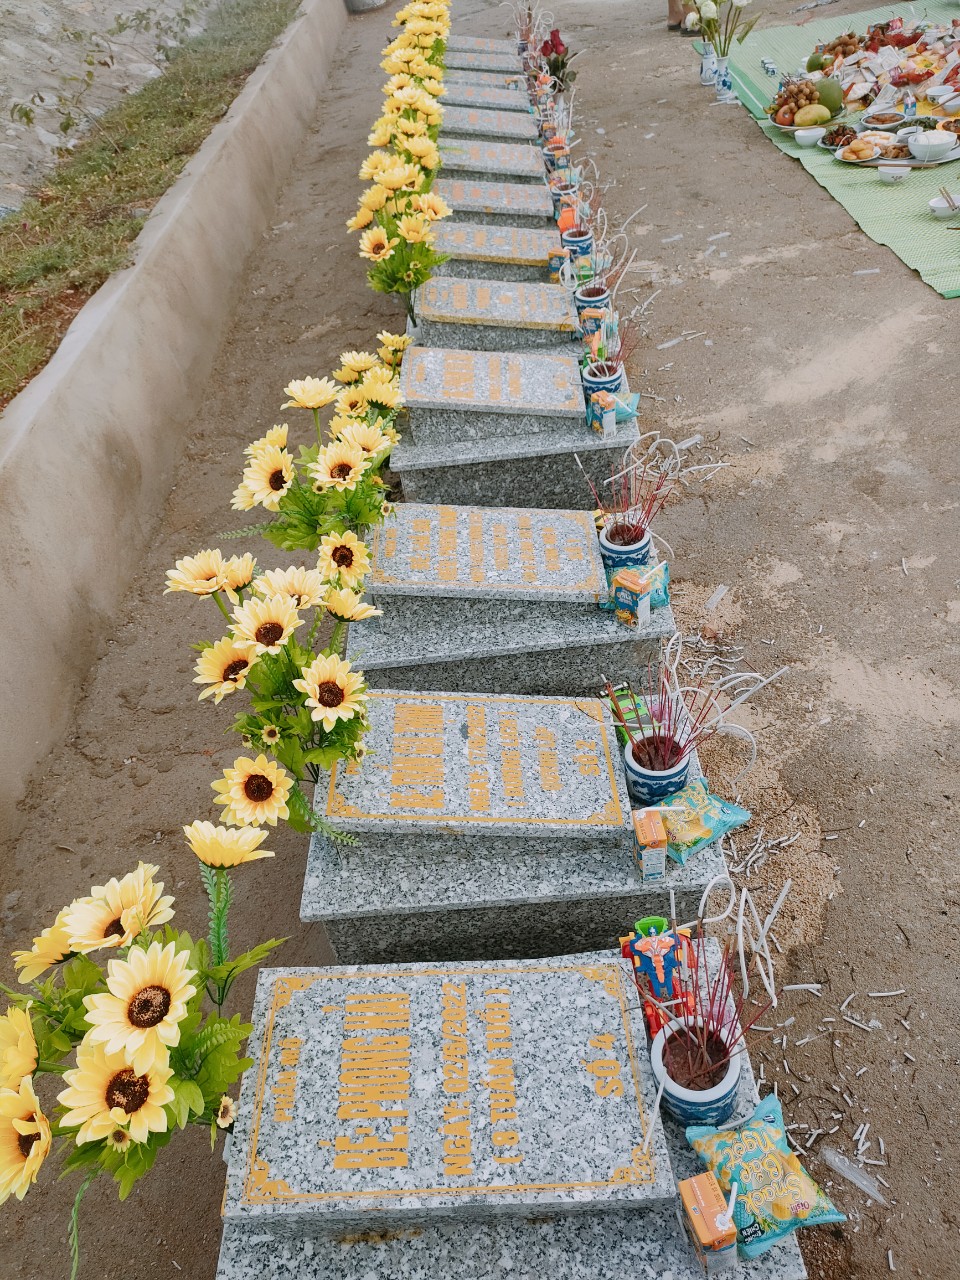 Nghĩa trang Hoa Hồng và câu chuyện ấm lòng về những thai nhi xấu số được cưu mang, chăm sóc - Ảnh 6.